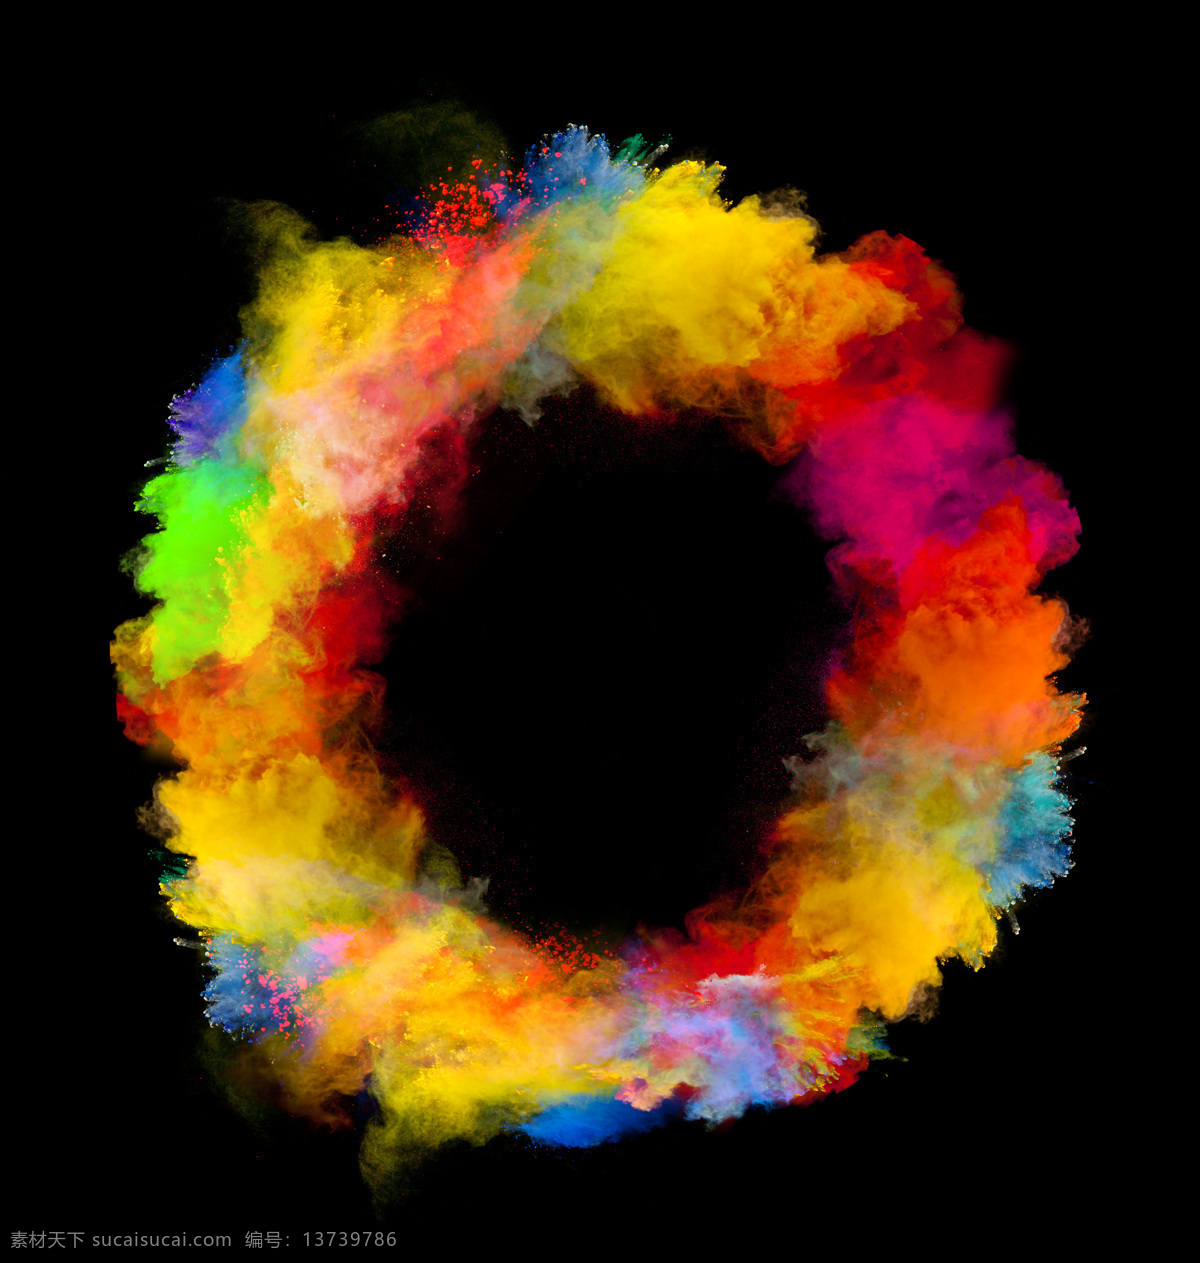 彩色 墨迹 圆圈 云状 油漆 水彩 颜料 其他类别 生活百科